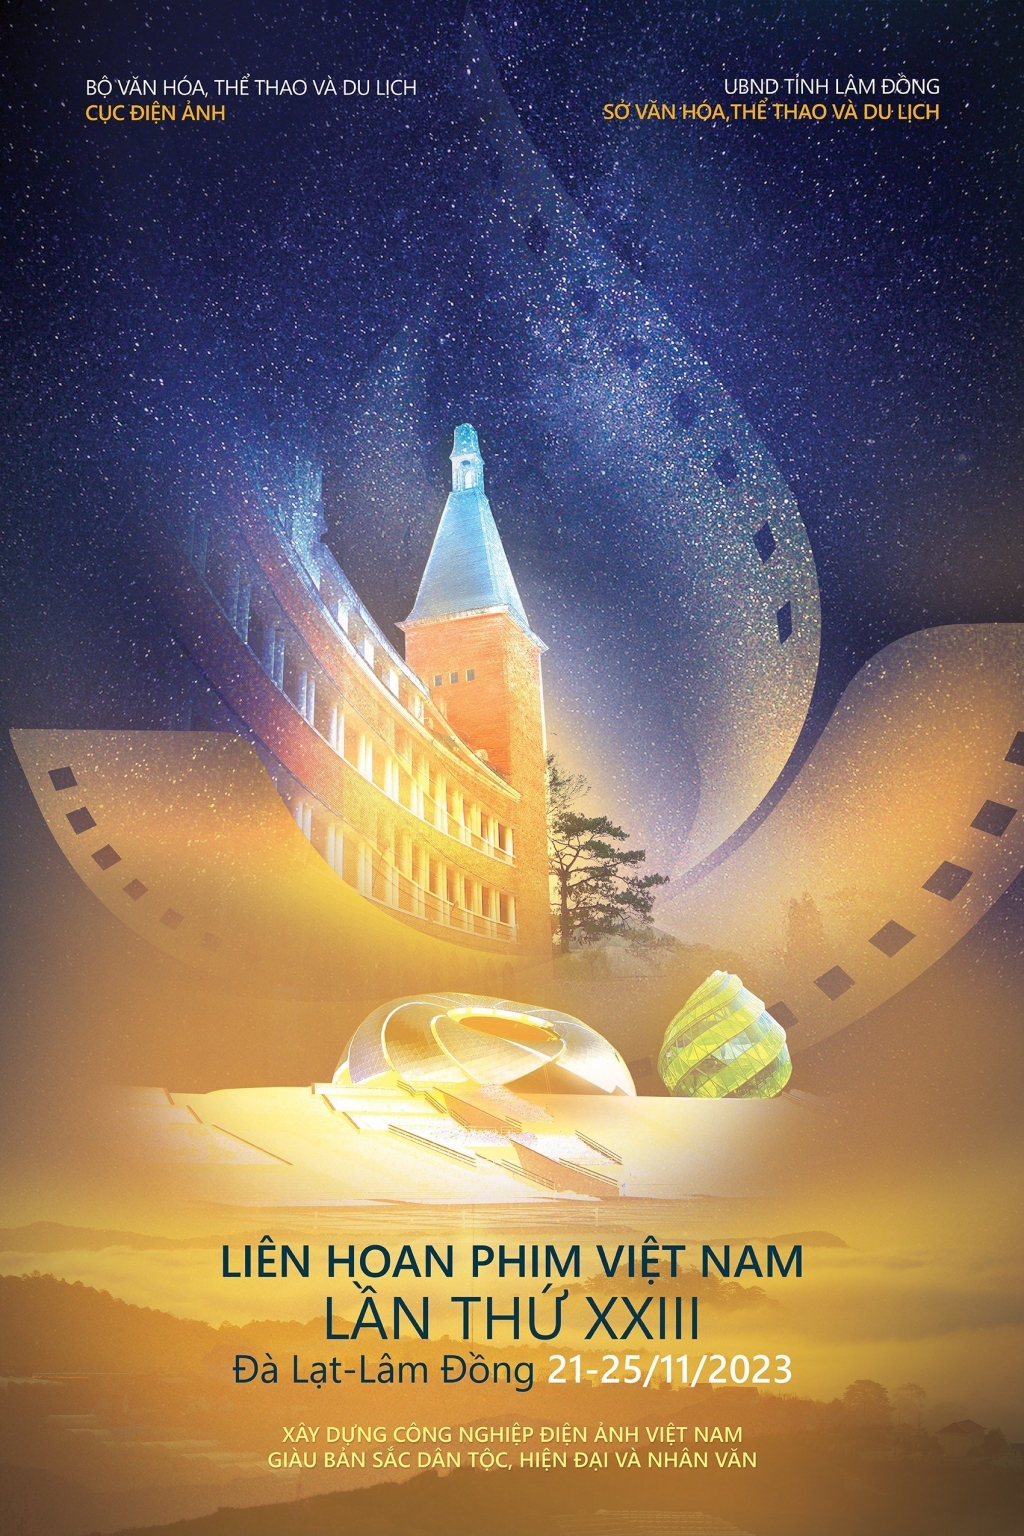 Có gì hấp dẫn tại Liên hoan phim Việt Nam lần thứ XXIII?